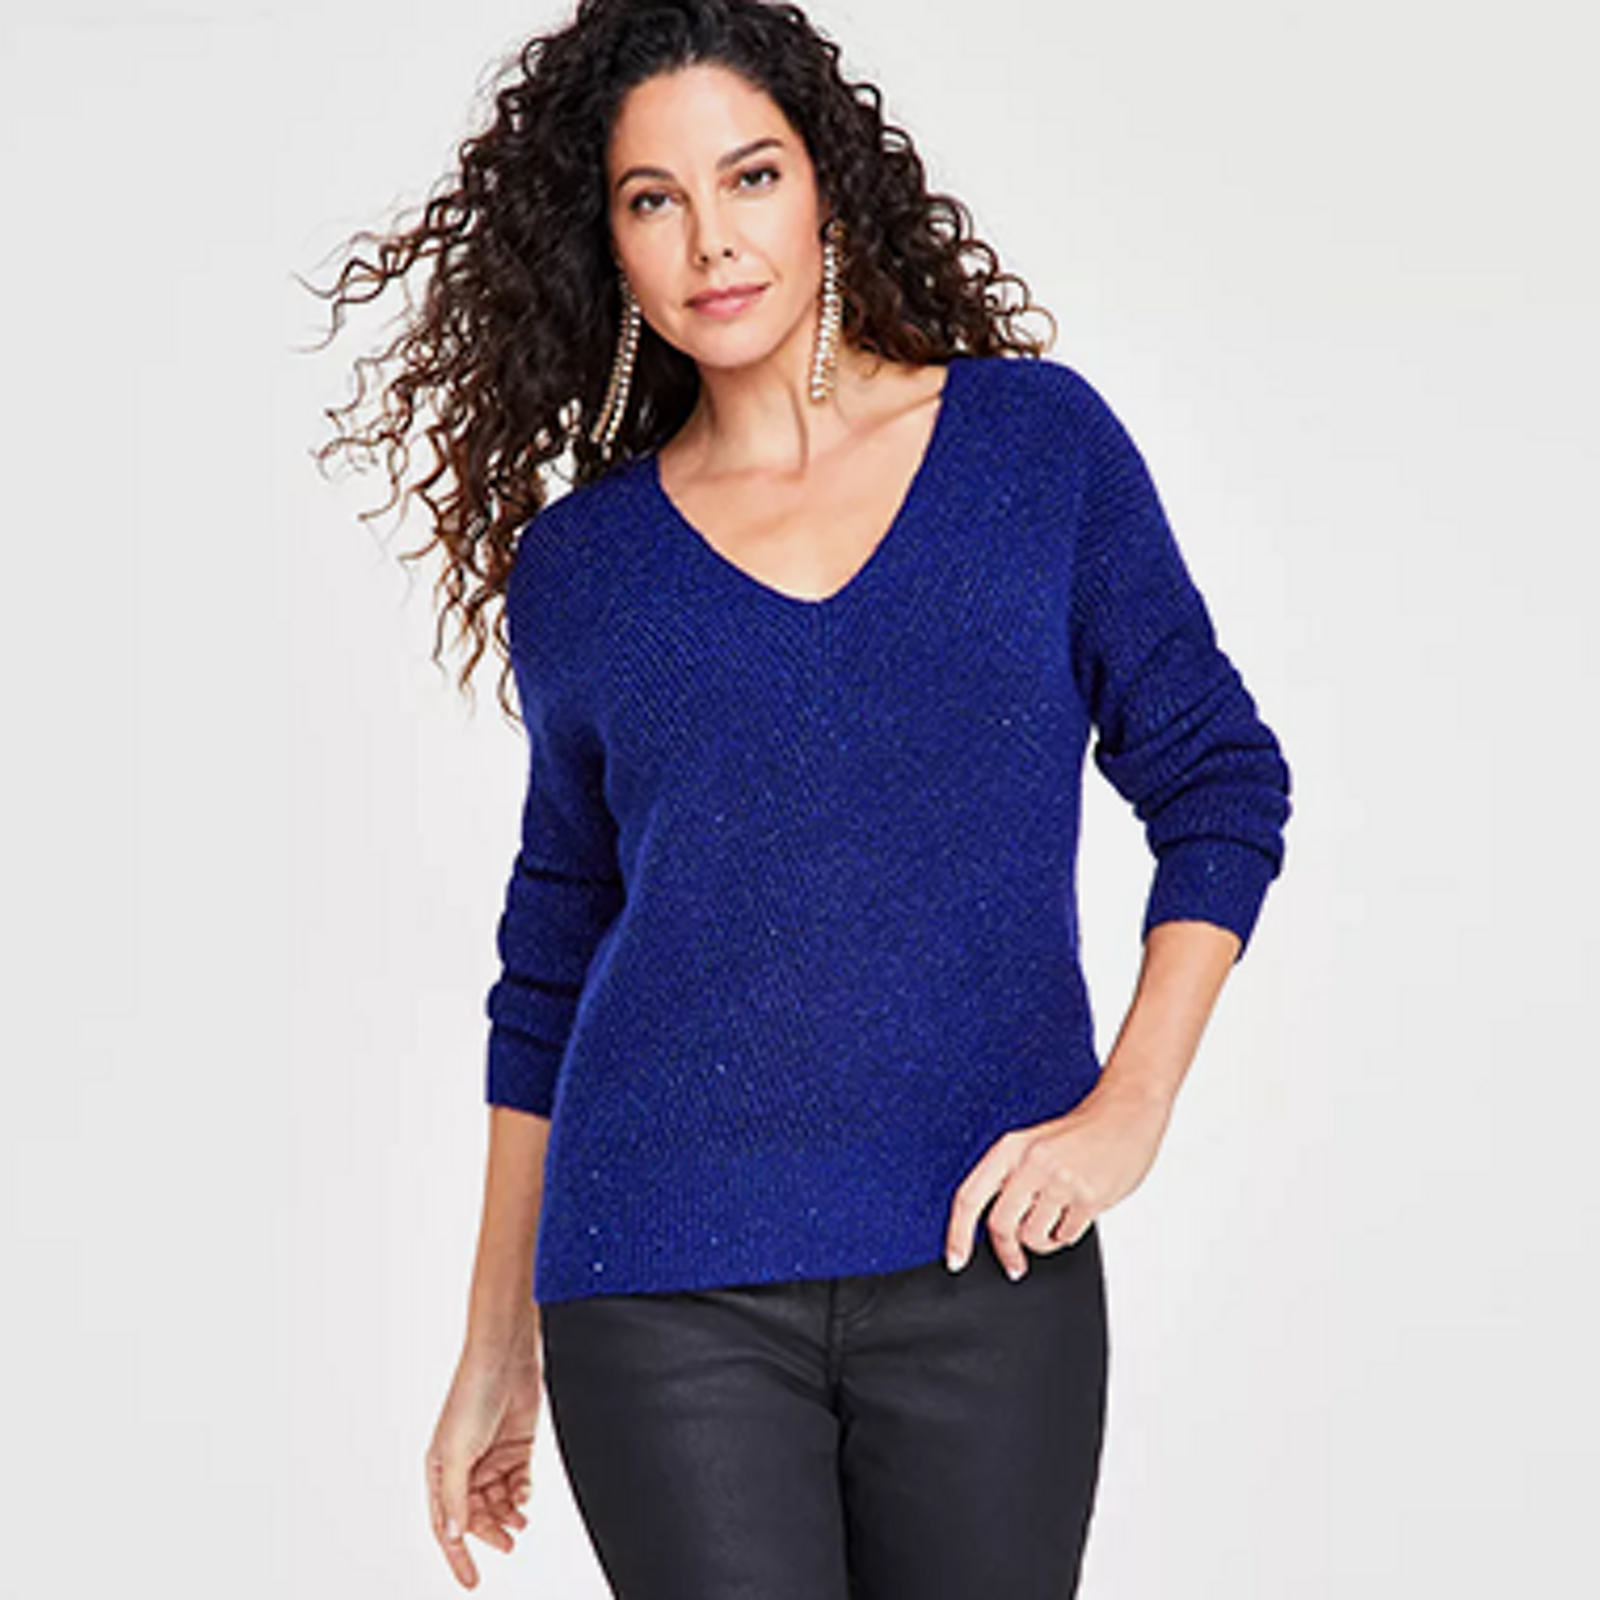 Lucky Brand Jeans Sweater Vista V Neck Sweater, $89, Macy's